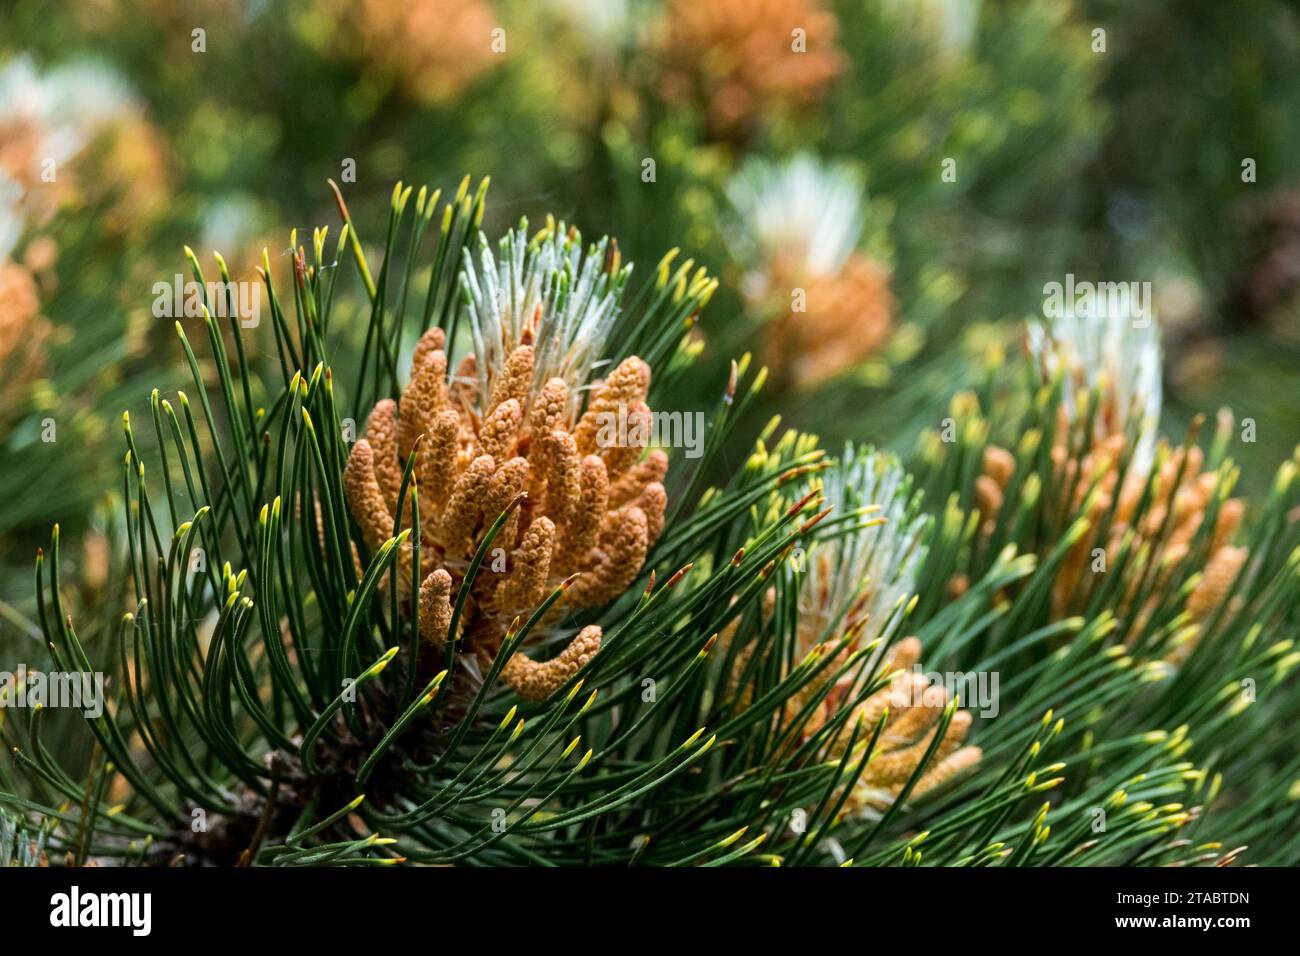 Pinus heldreichii, pollen, cones, Pine, branch Stock Photo